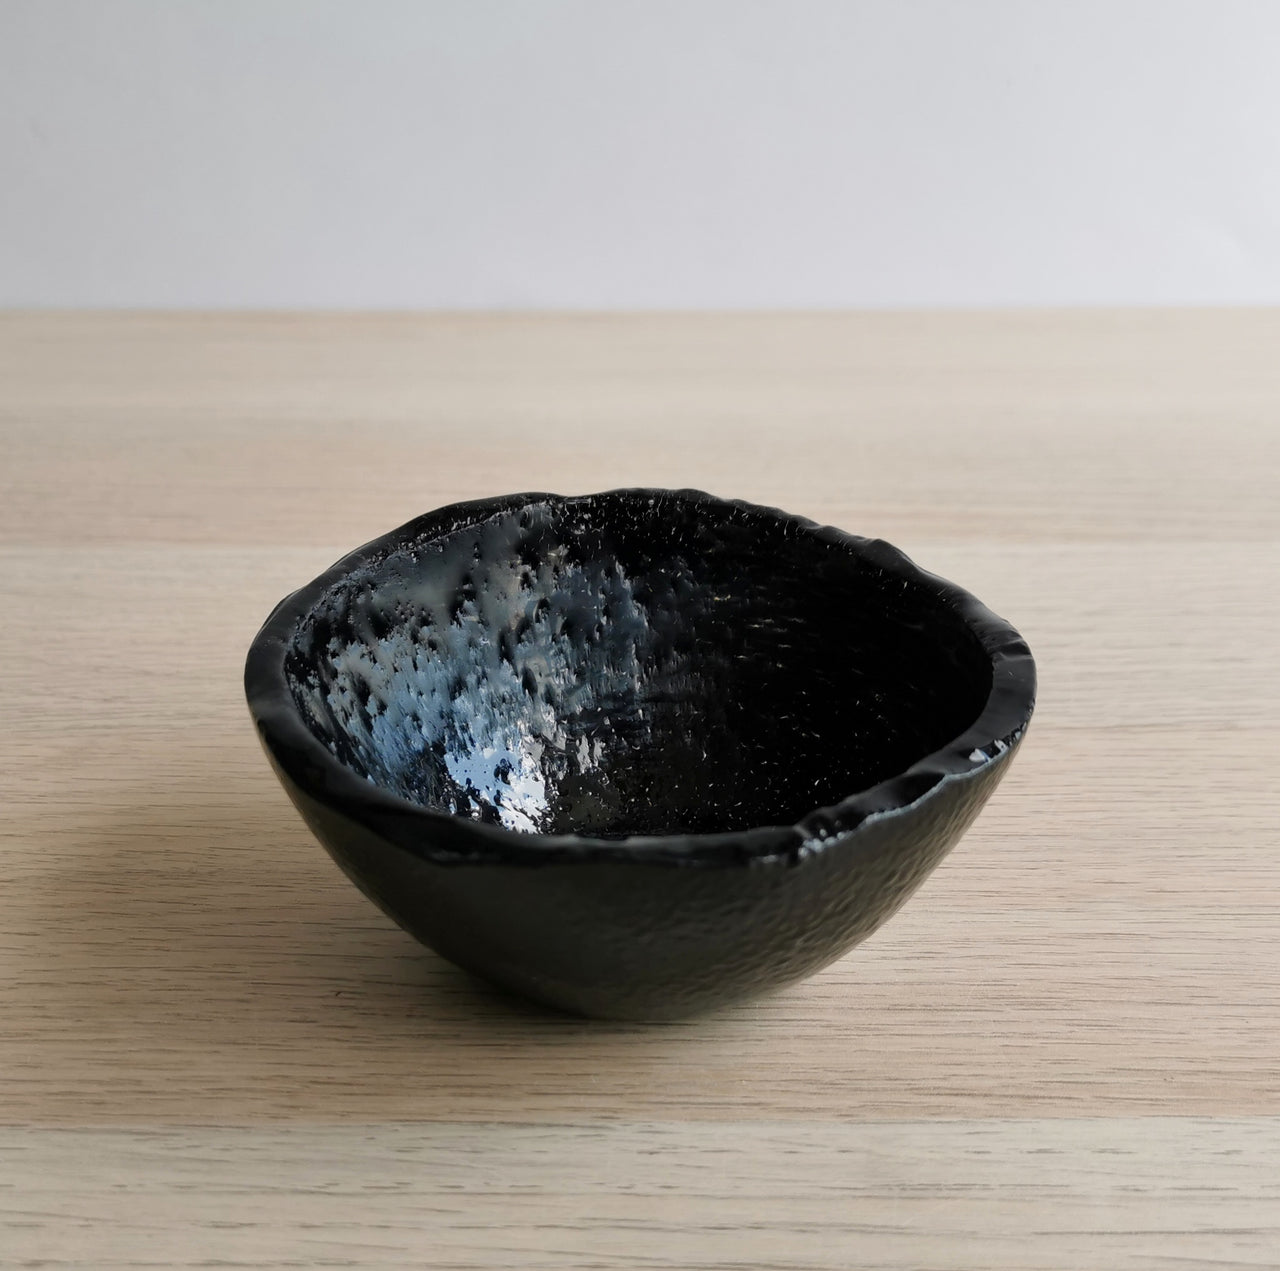 Vanilla Minimalist Black Glass Bowl. Small Black Glass Deep Sauce Bowl - 4 1/8" (10,5cm.)